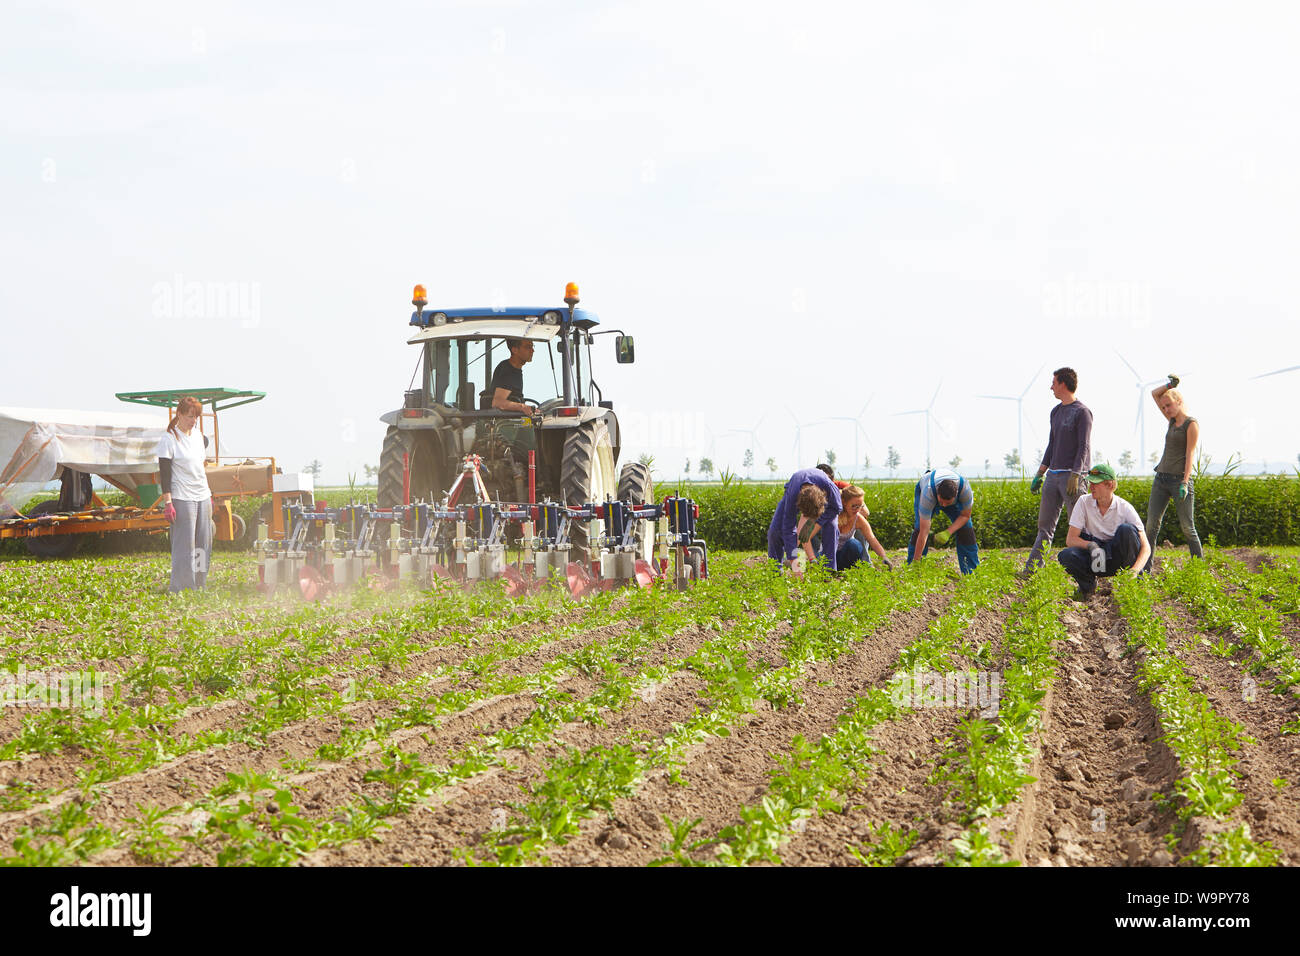 Traktor mit Fahrer und Team von gemischten Geschlecht migrant Landarbeiter in einem Feld von biologischem Anbau Chicoree arbeiten an einem kommerziellen landwirtschaftlichen Betrieb Stockfoto